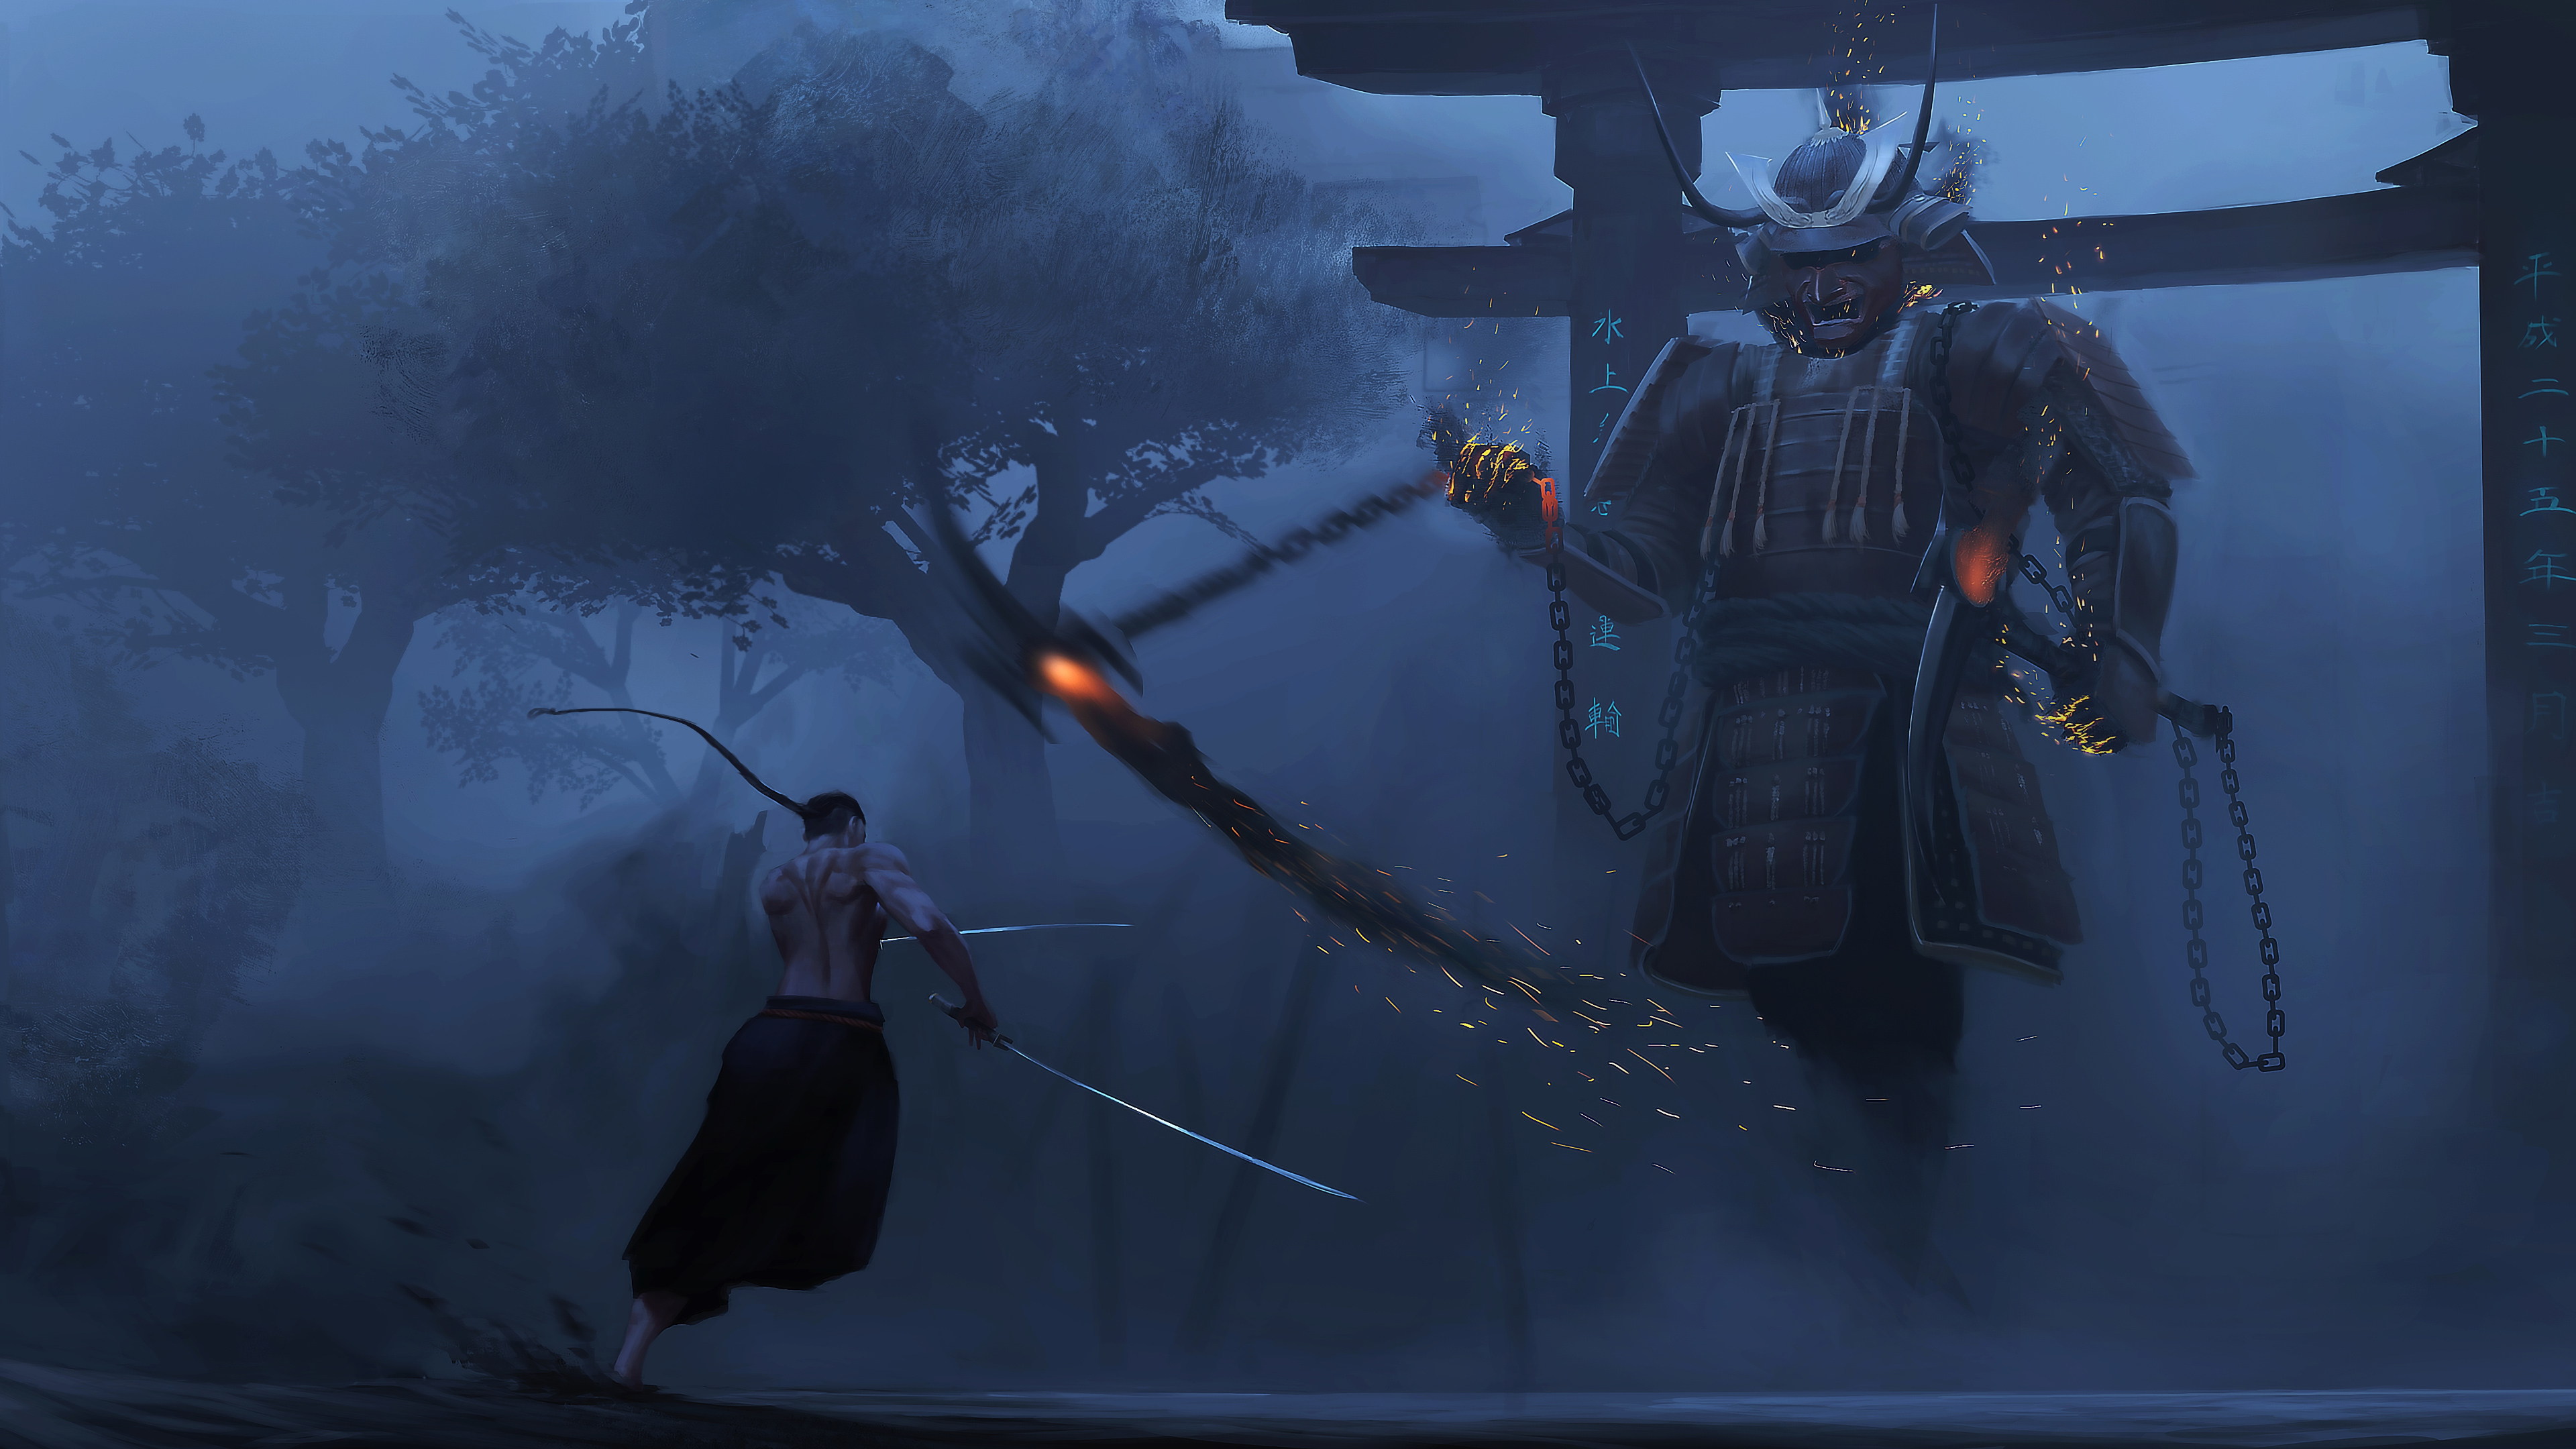 Samurai 4K sẽ đem lại cho bạn trải nghiệm tuyệt vời ngay trên màn hình của mình. Từ chi tiết đến màu sắc, mọi thứ đều rực rỡ và sắc nét. Hãy chìm đắm trong thế giới của những chiến binh đầy sức mạnh và phiêu lưu với Samurai 4K.